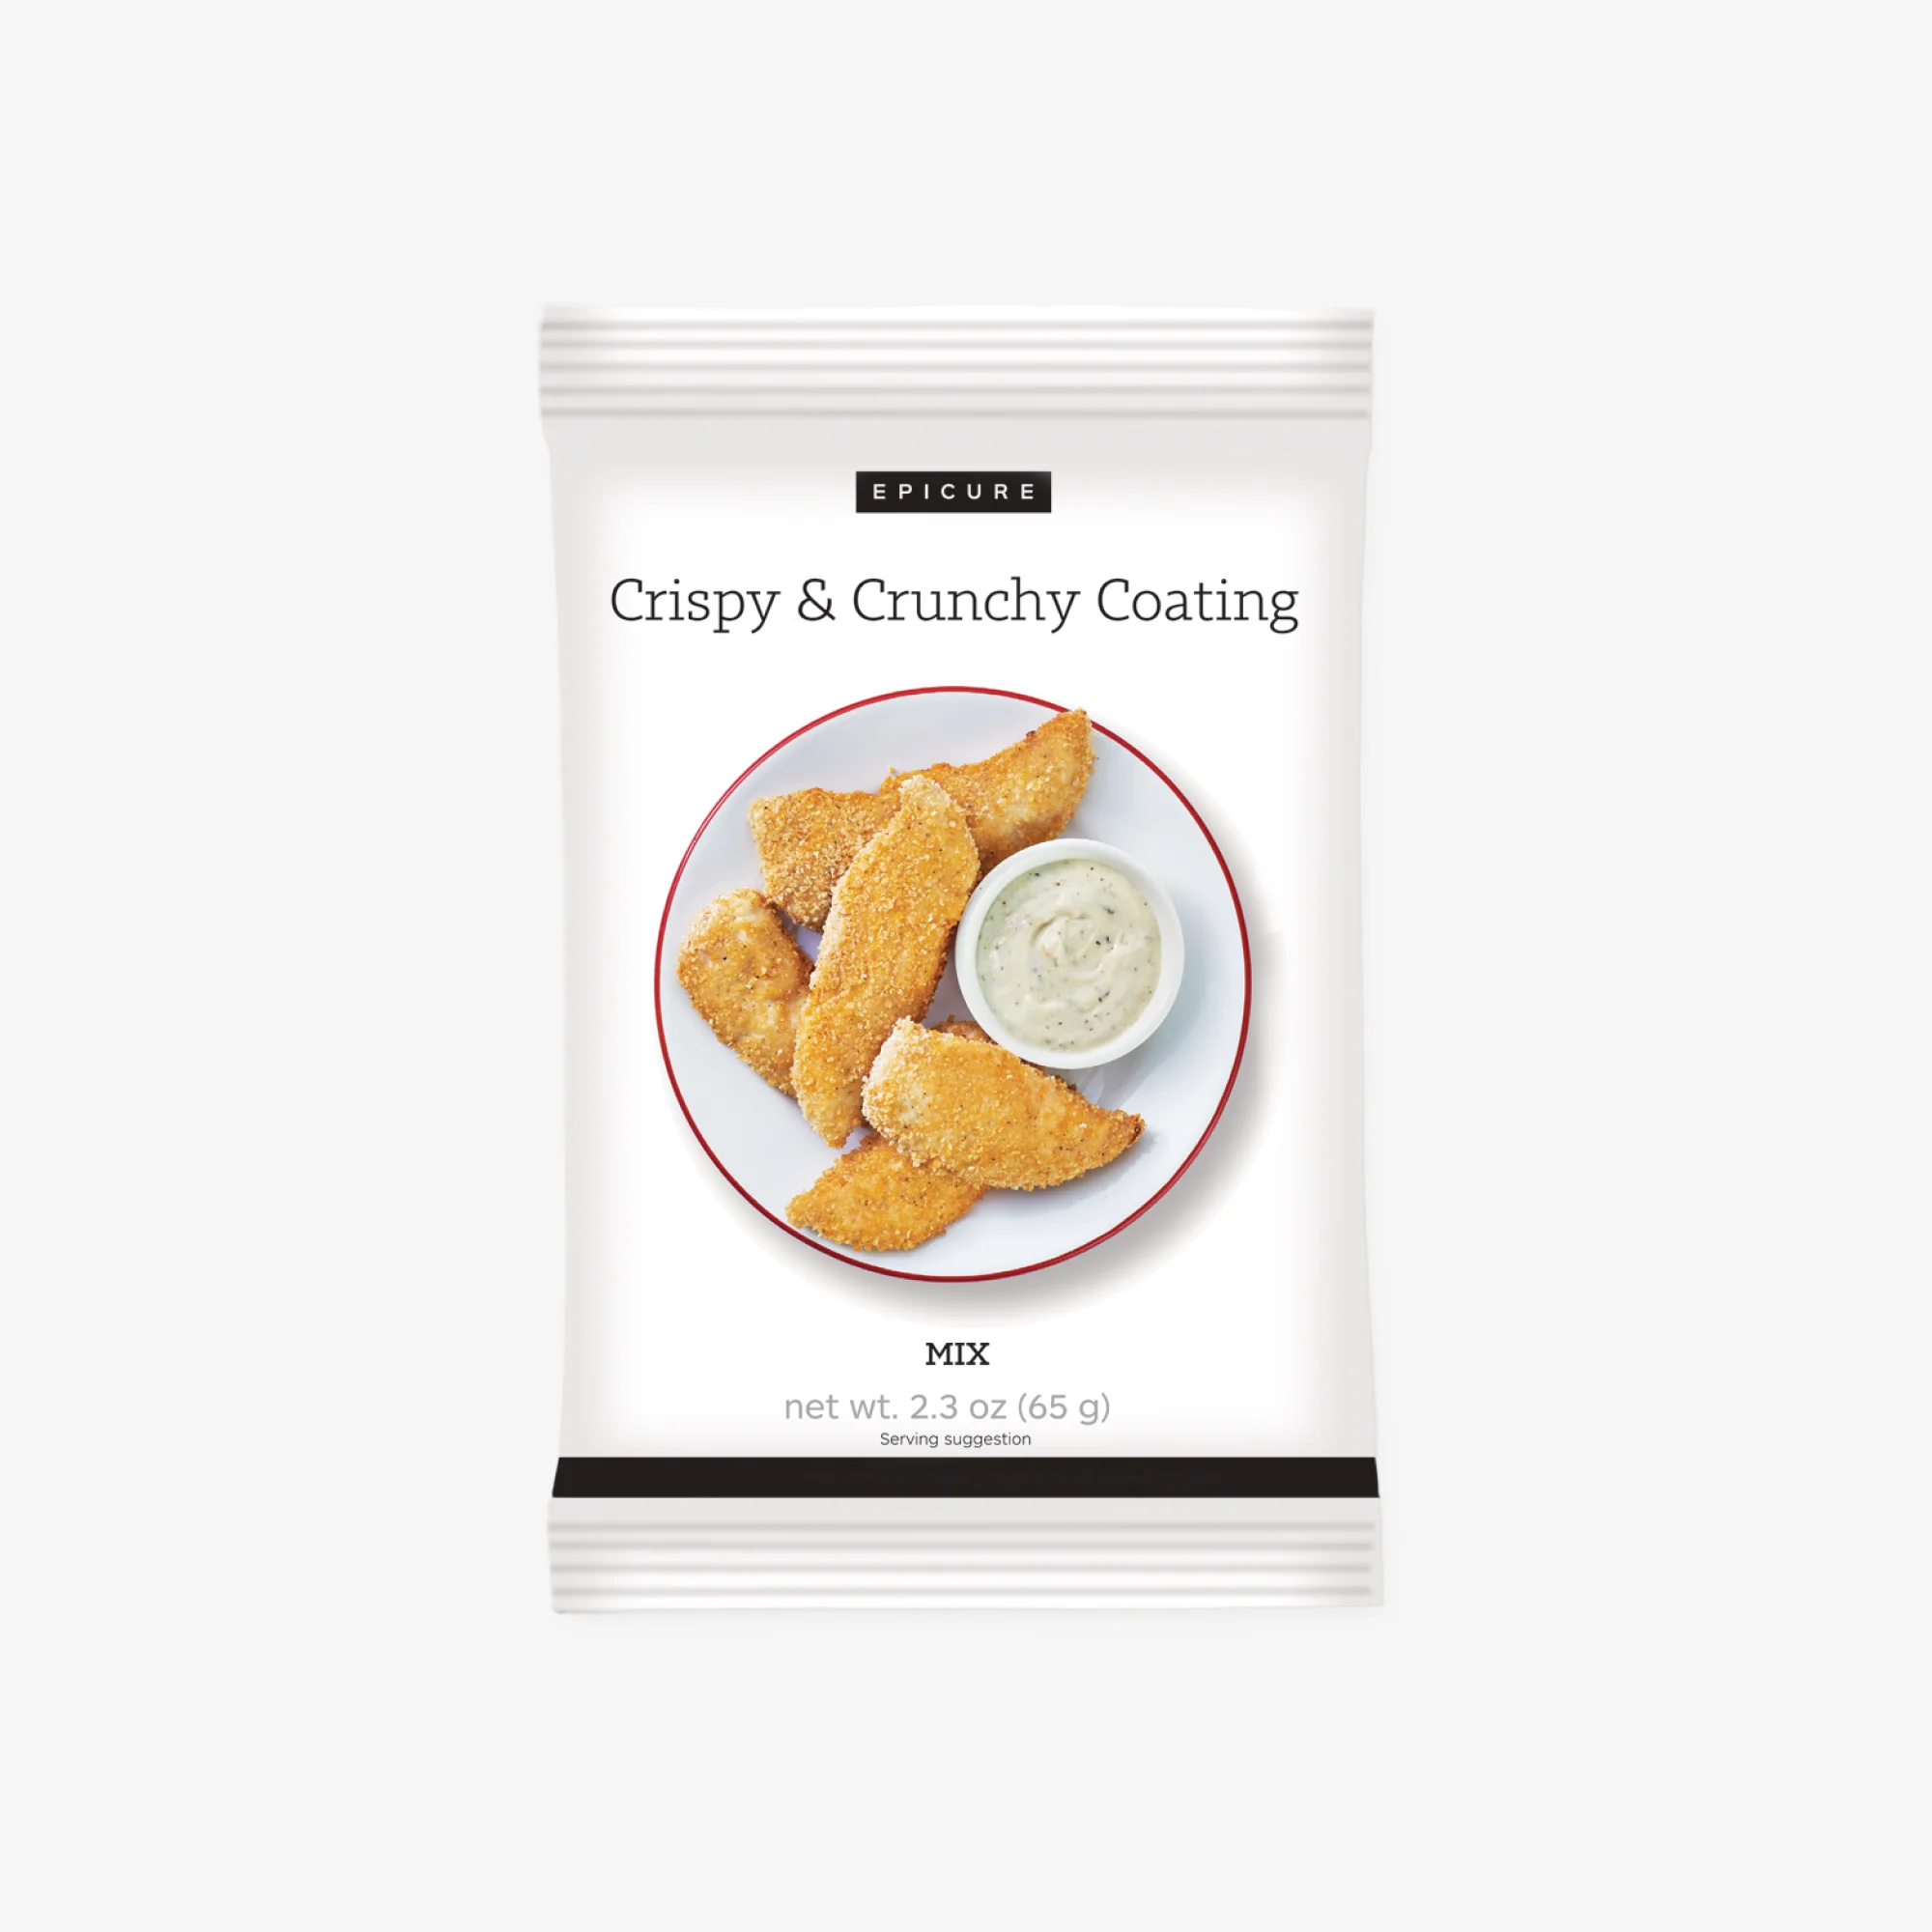 Crispy & Crunchy Coating (Pkg of 3)